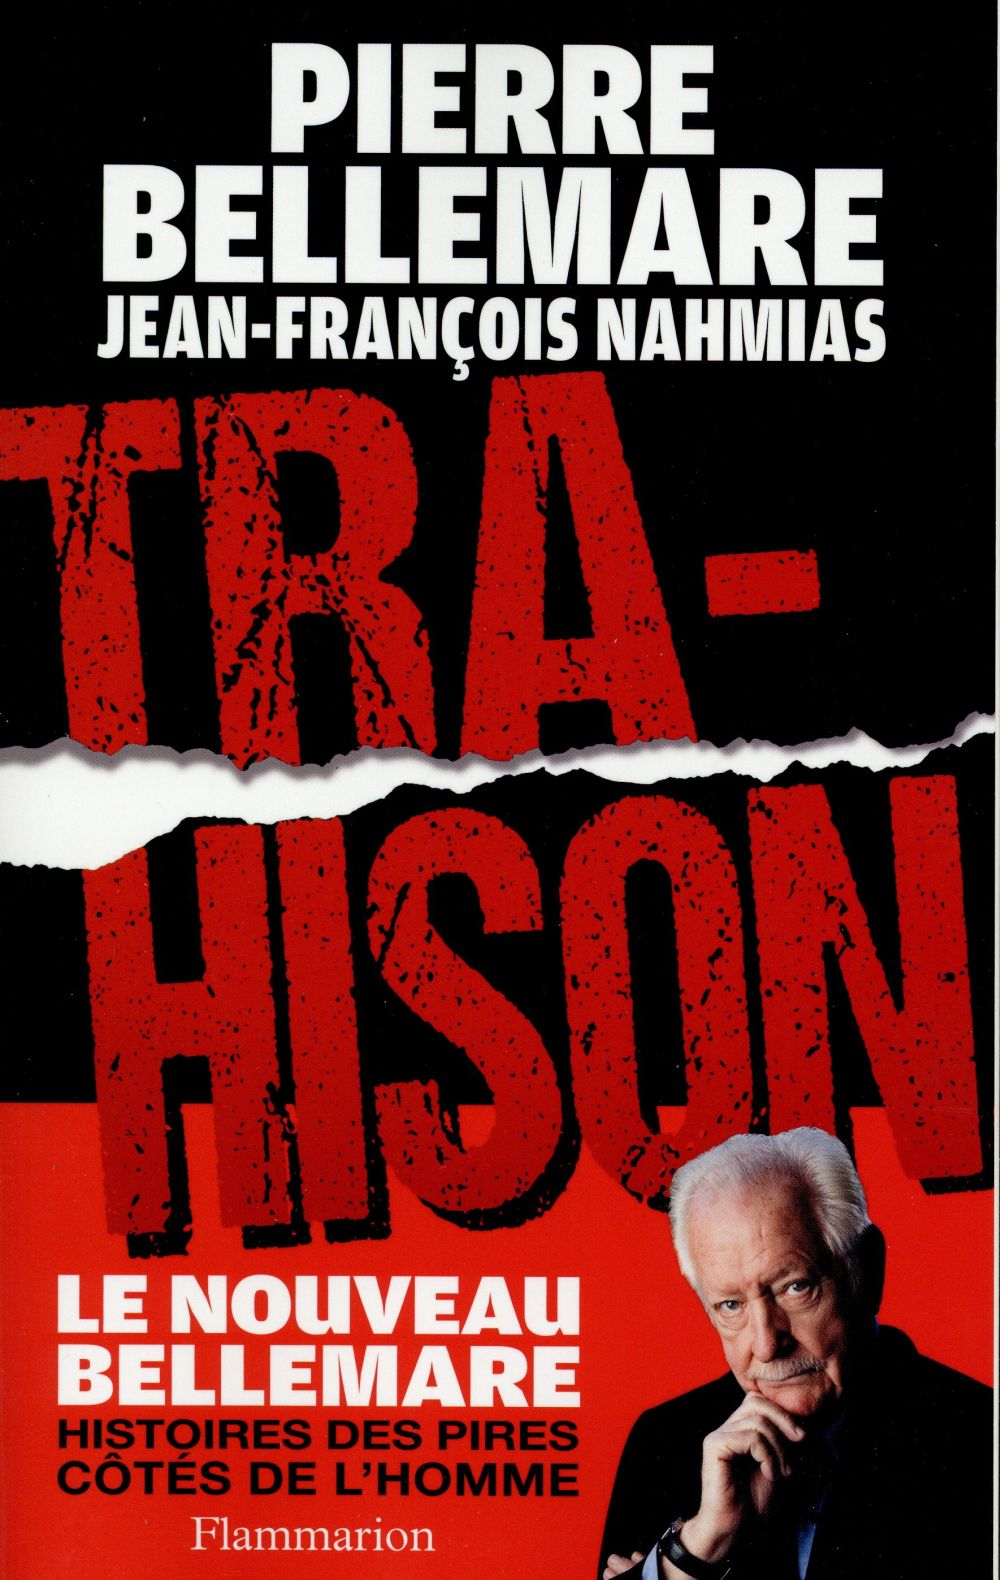 TRAHISON - HISTOIRES DES PIRES COTES DE L'HOMME